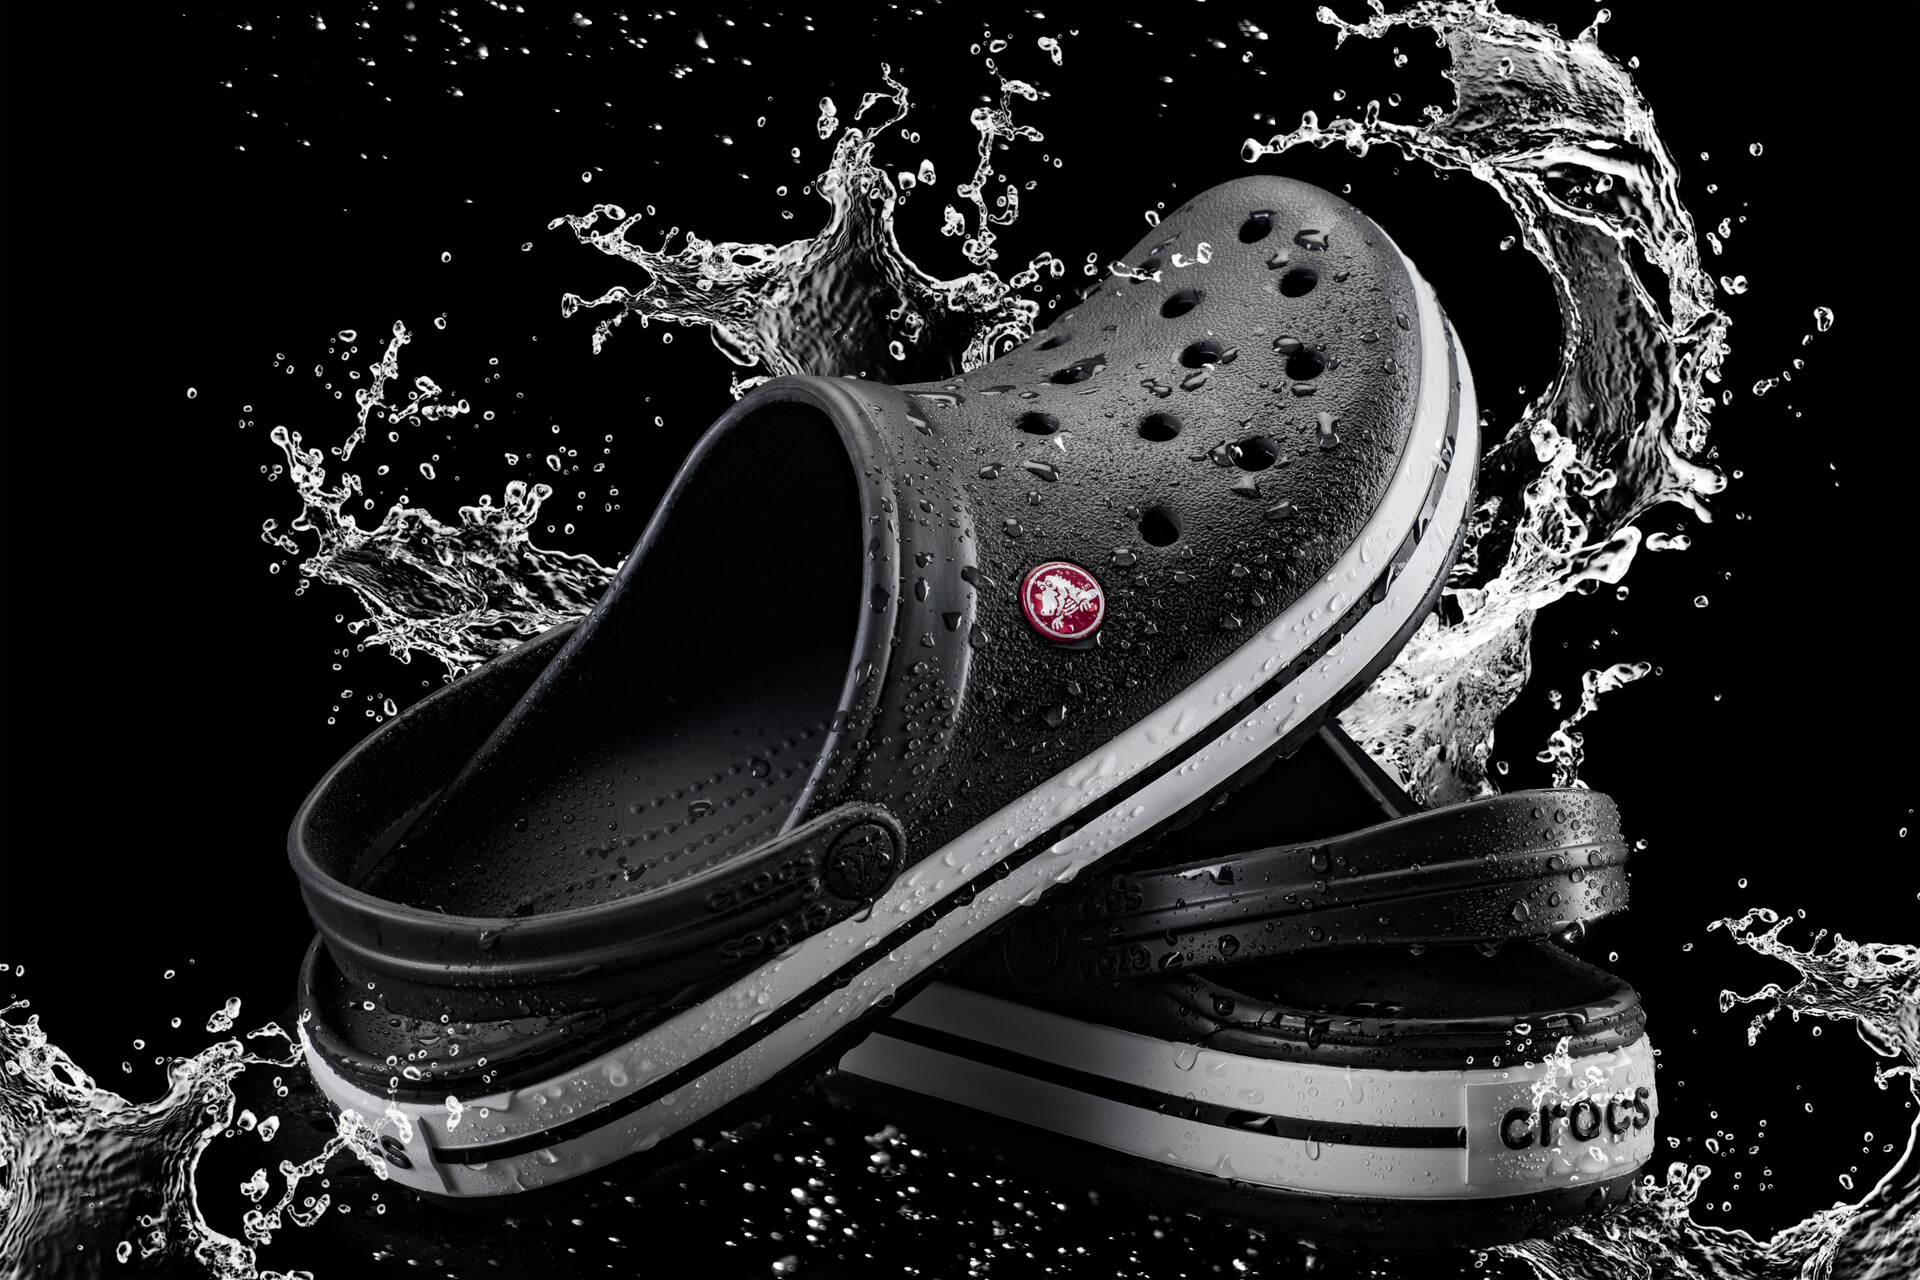 crocs cool again